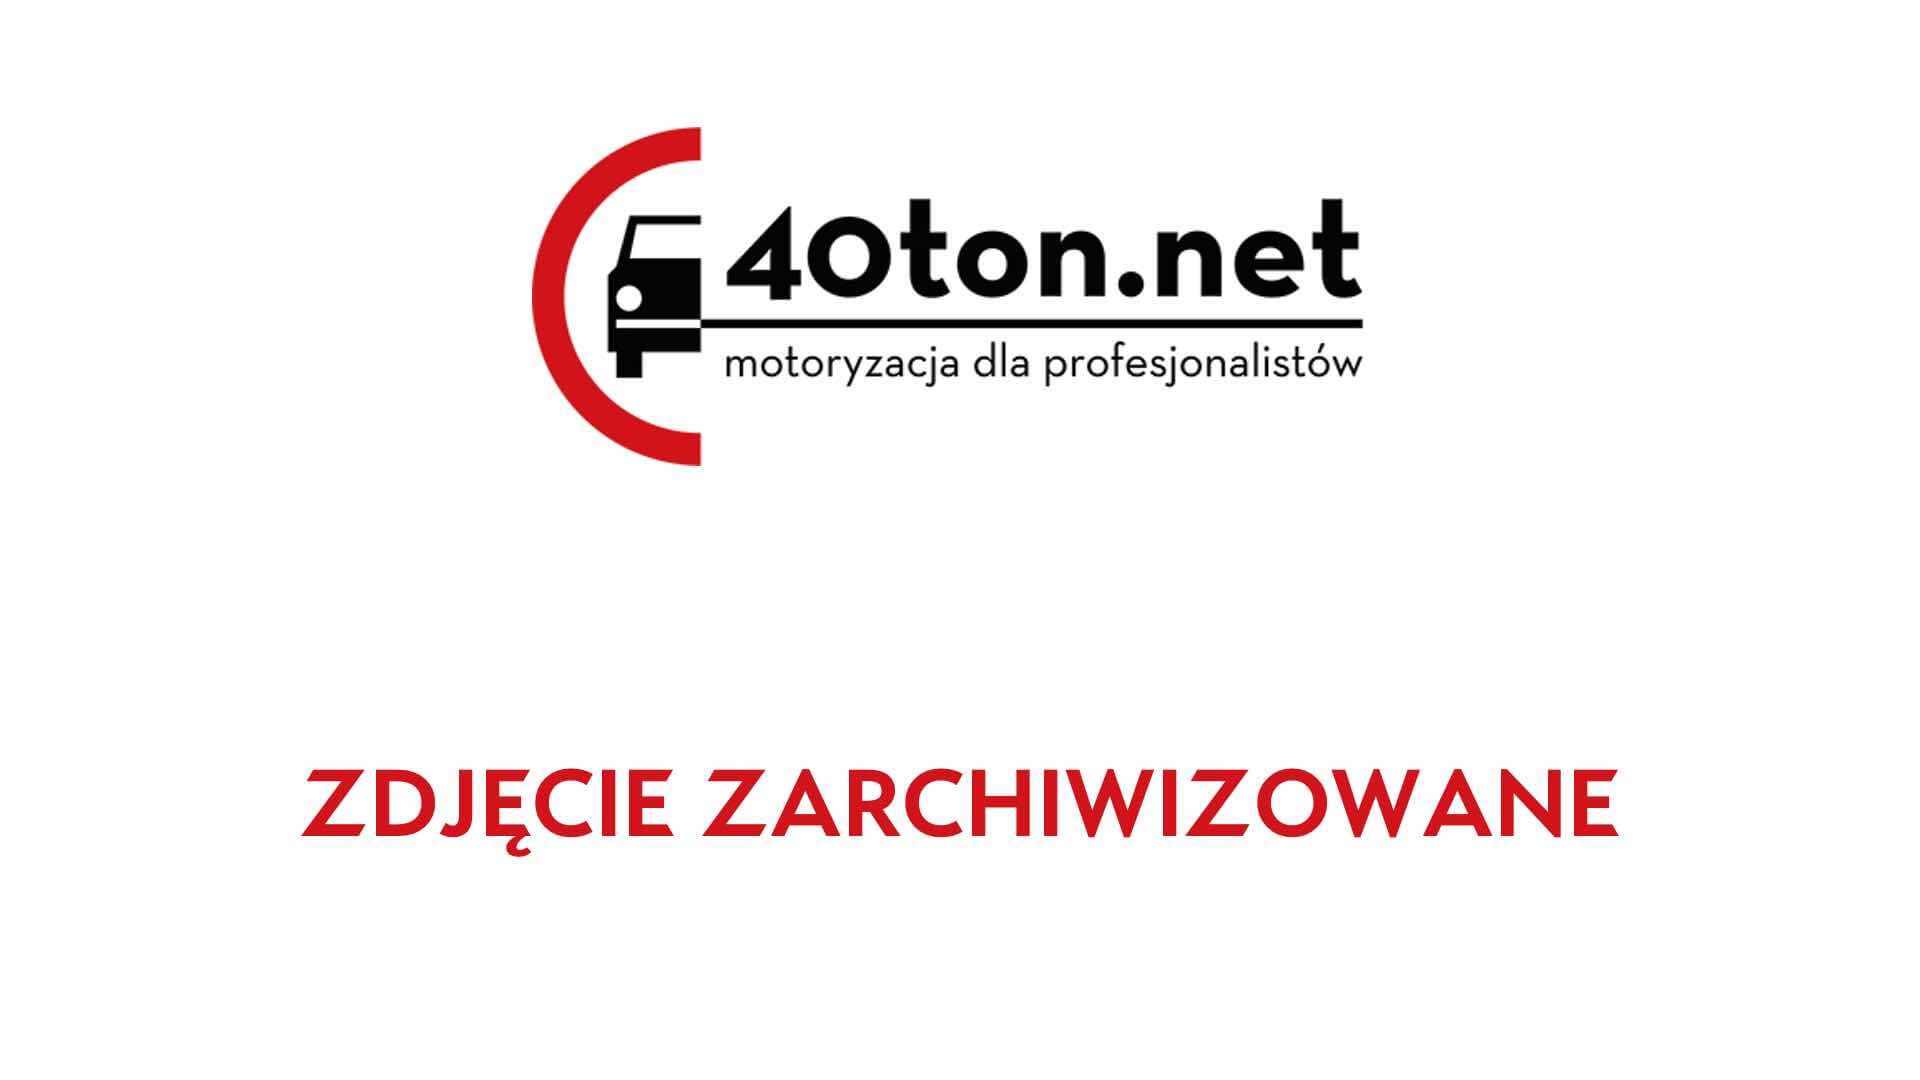 polskie_ciezarowki_40ton_truckspotters_1309